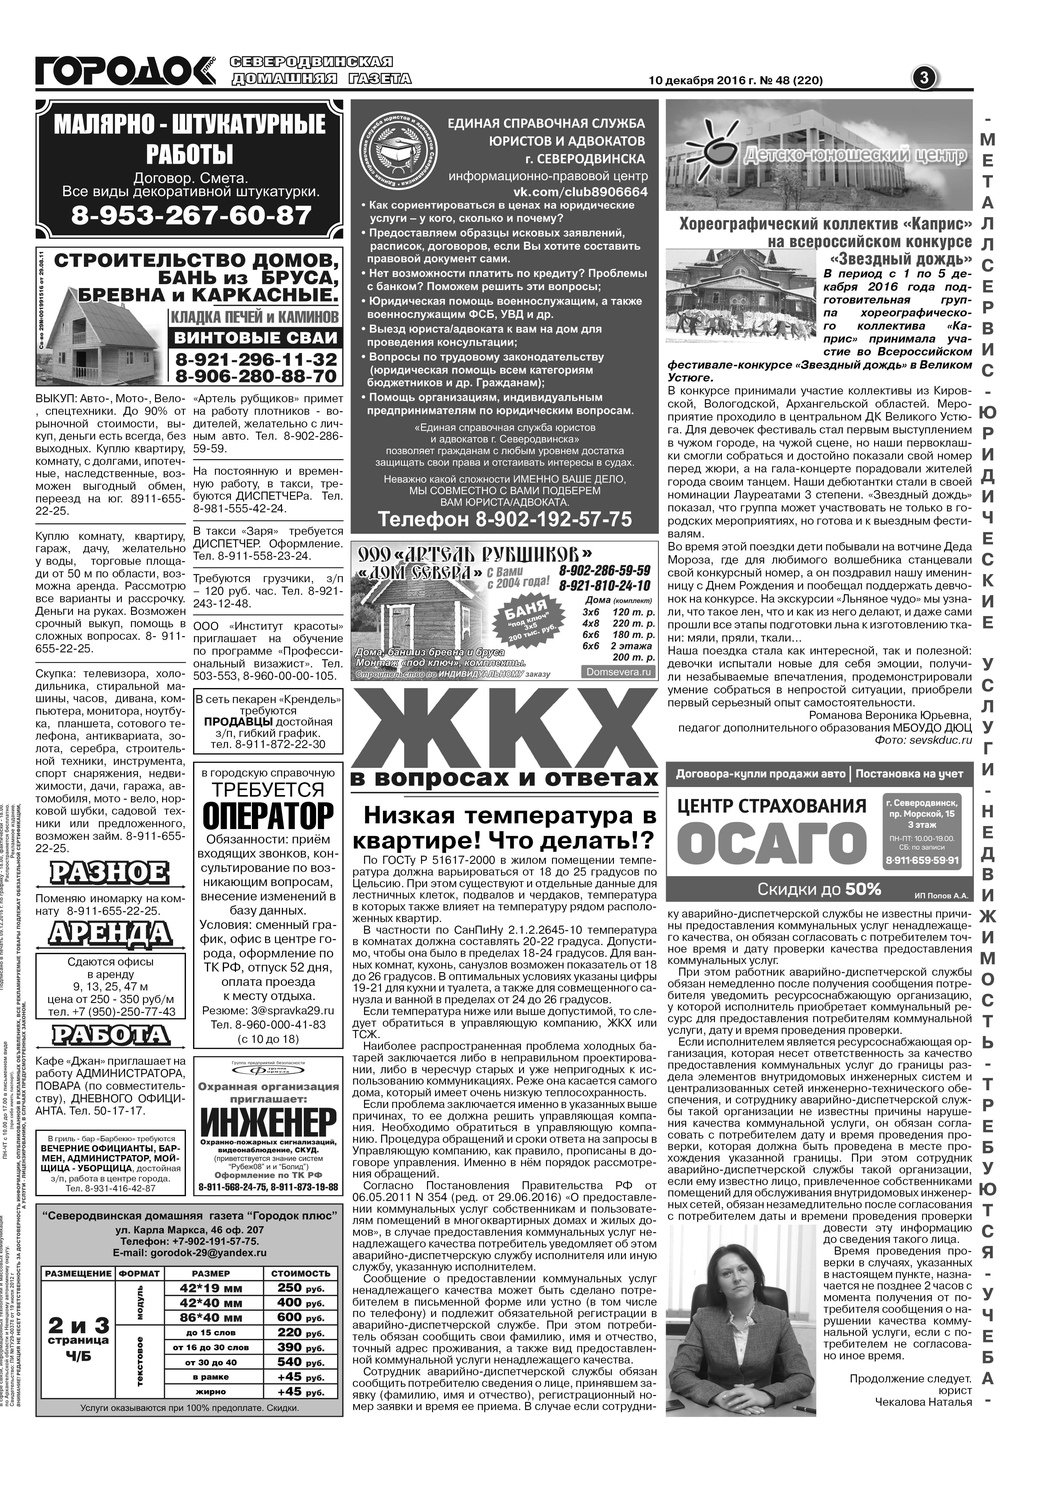 Городок плюс, выпуск номер 48 от 10 декабря 2016 года, страница 3.